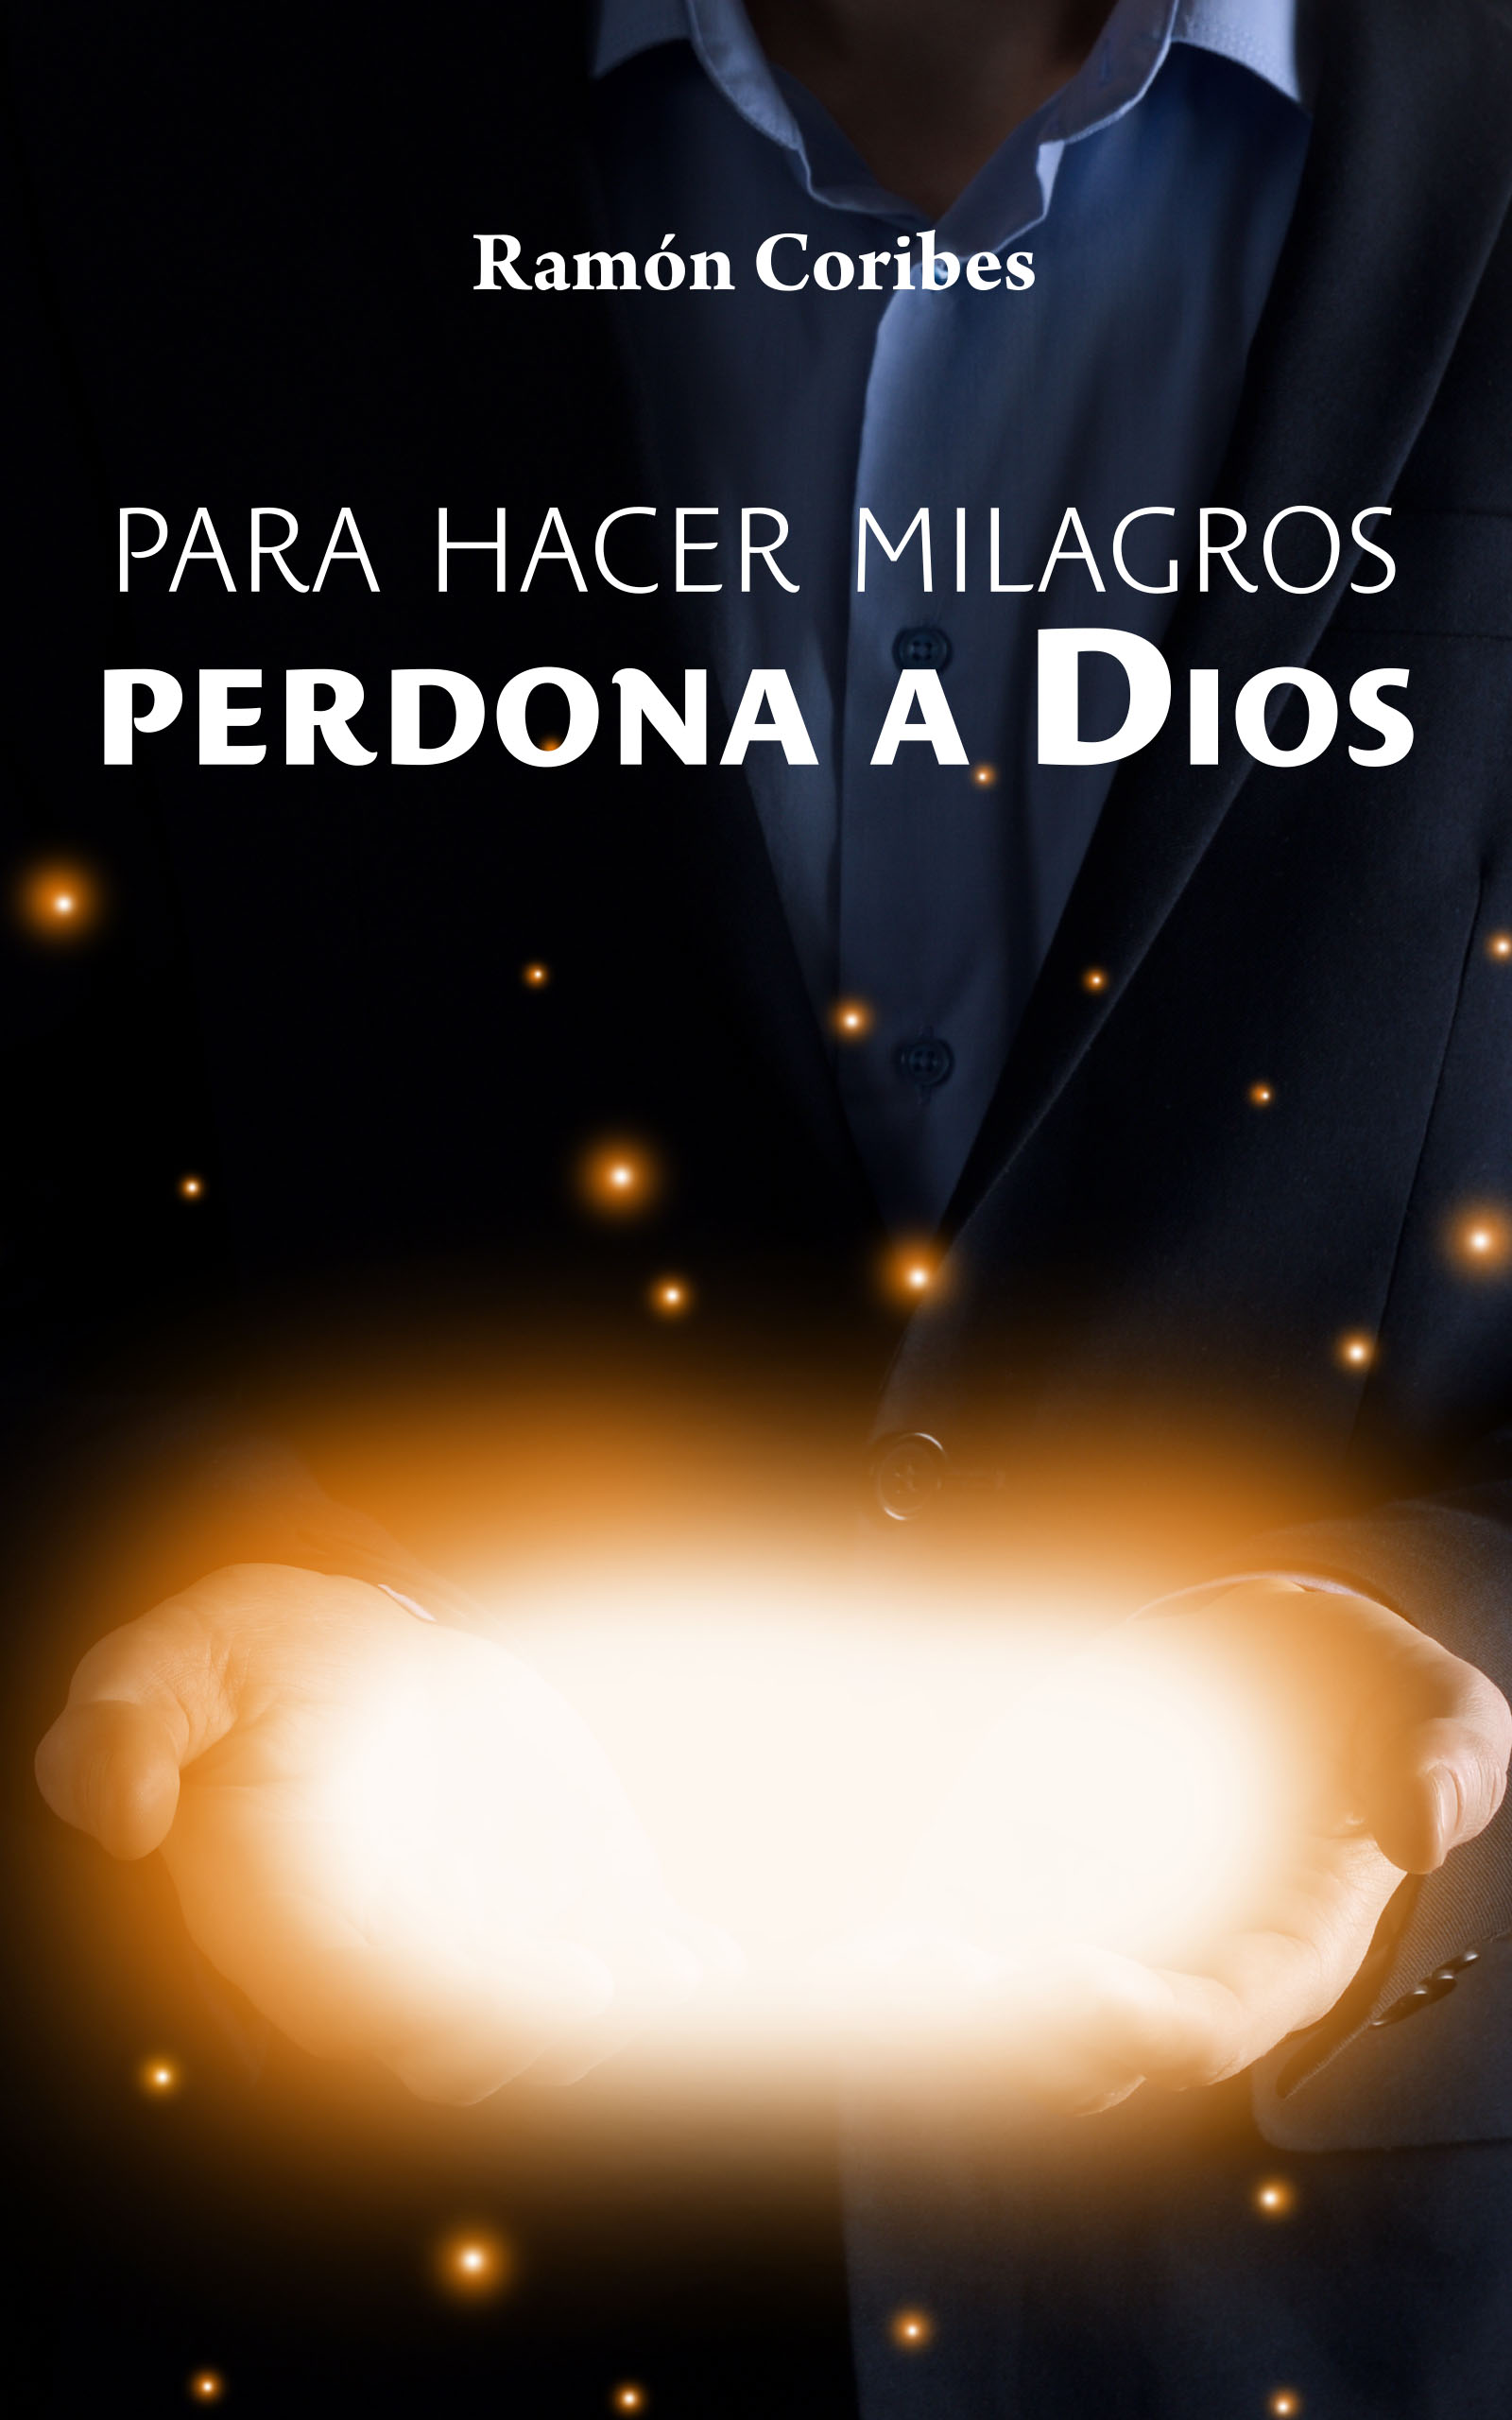 Para hacer milagros, perdona a Dios, de Ramón Coribes